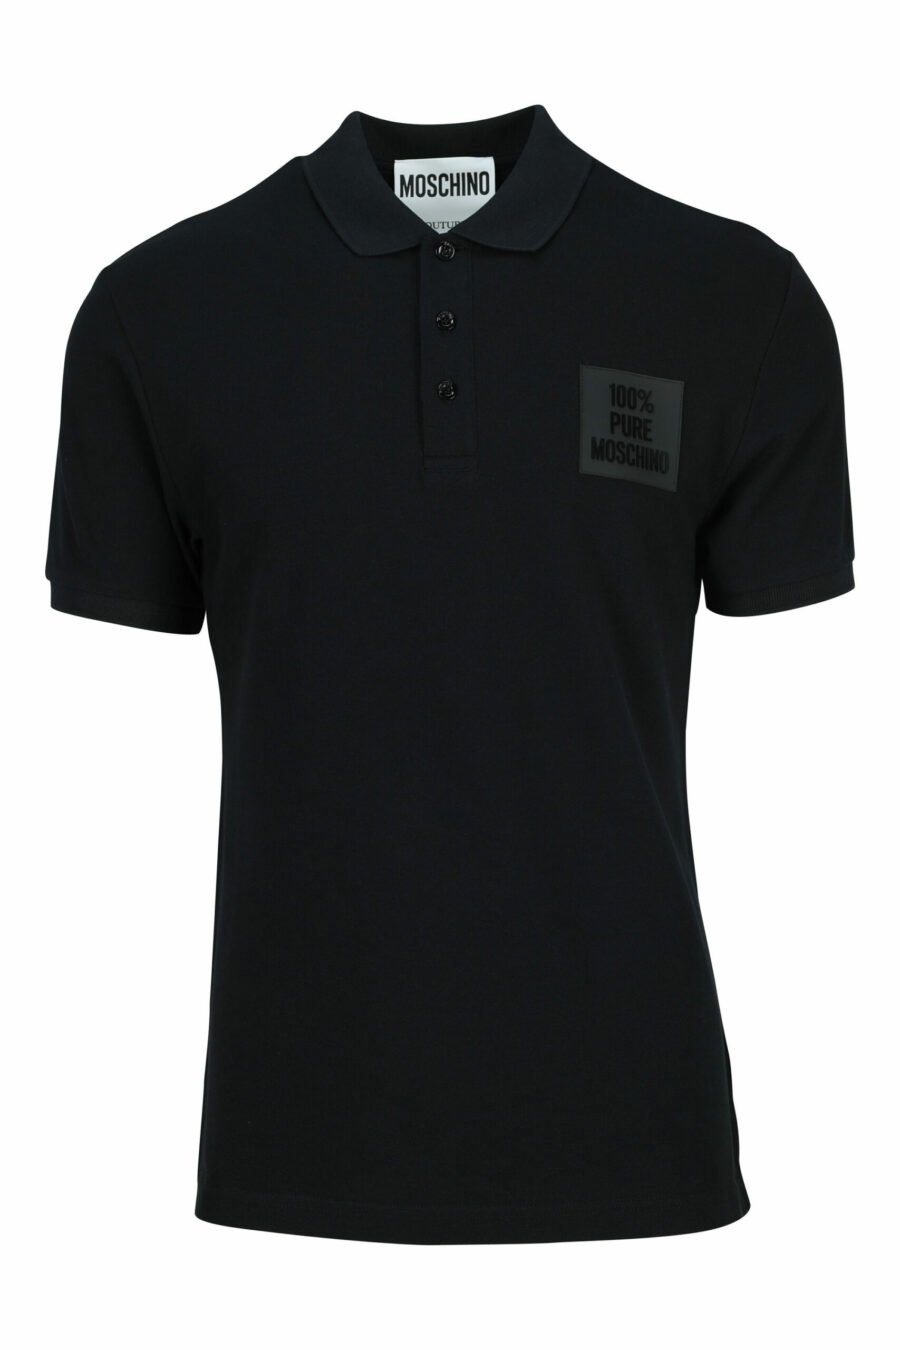 Schwarzes Poloshirt mit einfarbigem, quadratischem Logo - 667113765976 skaliert